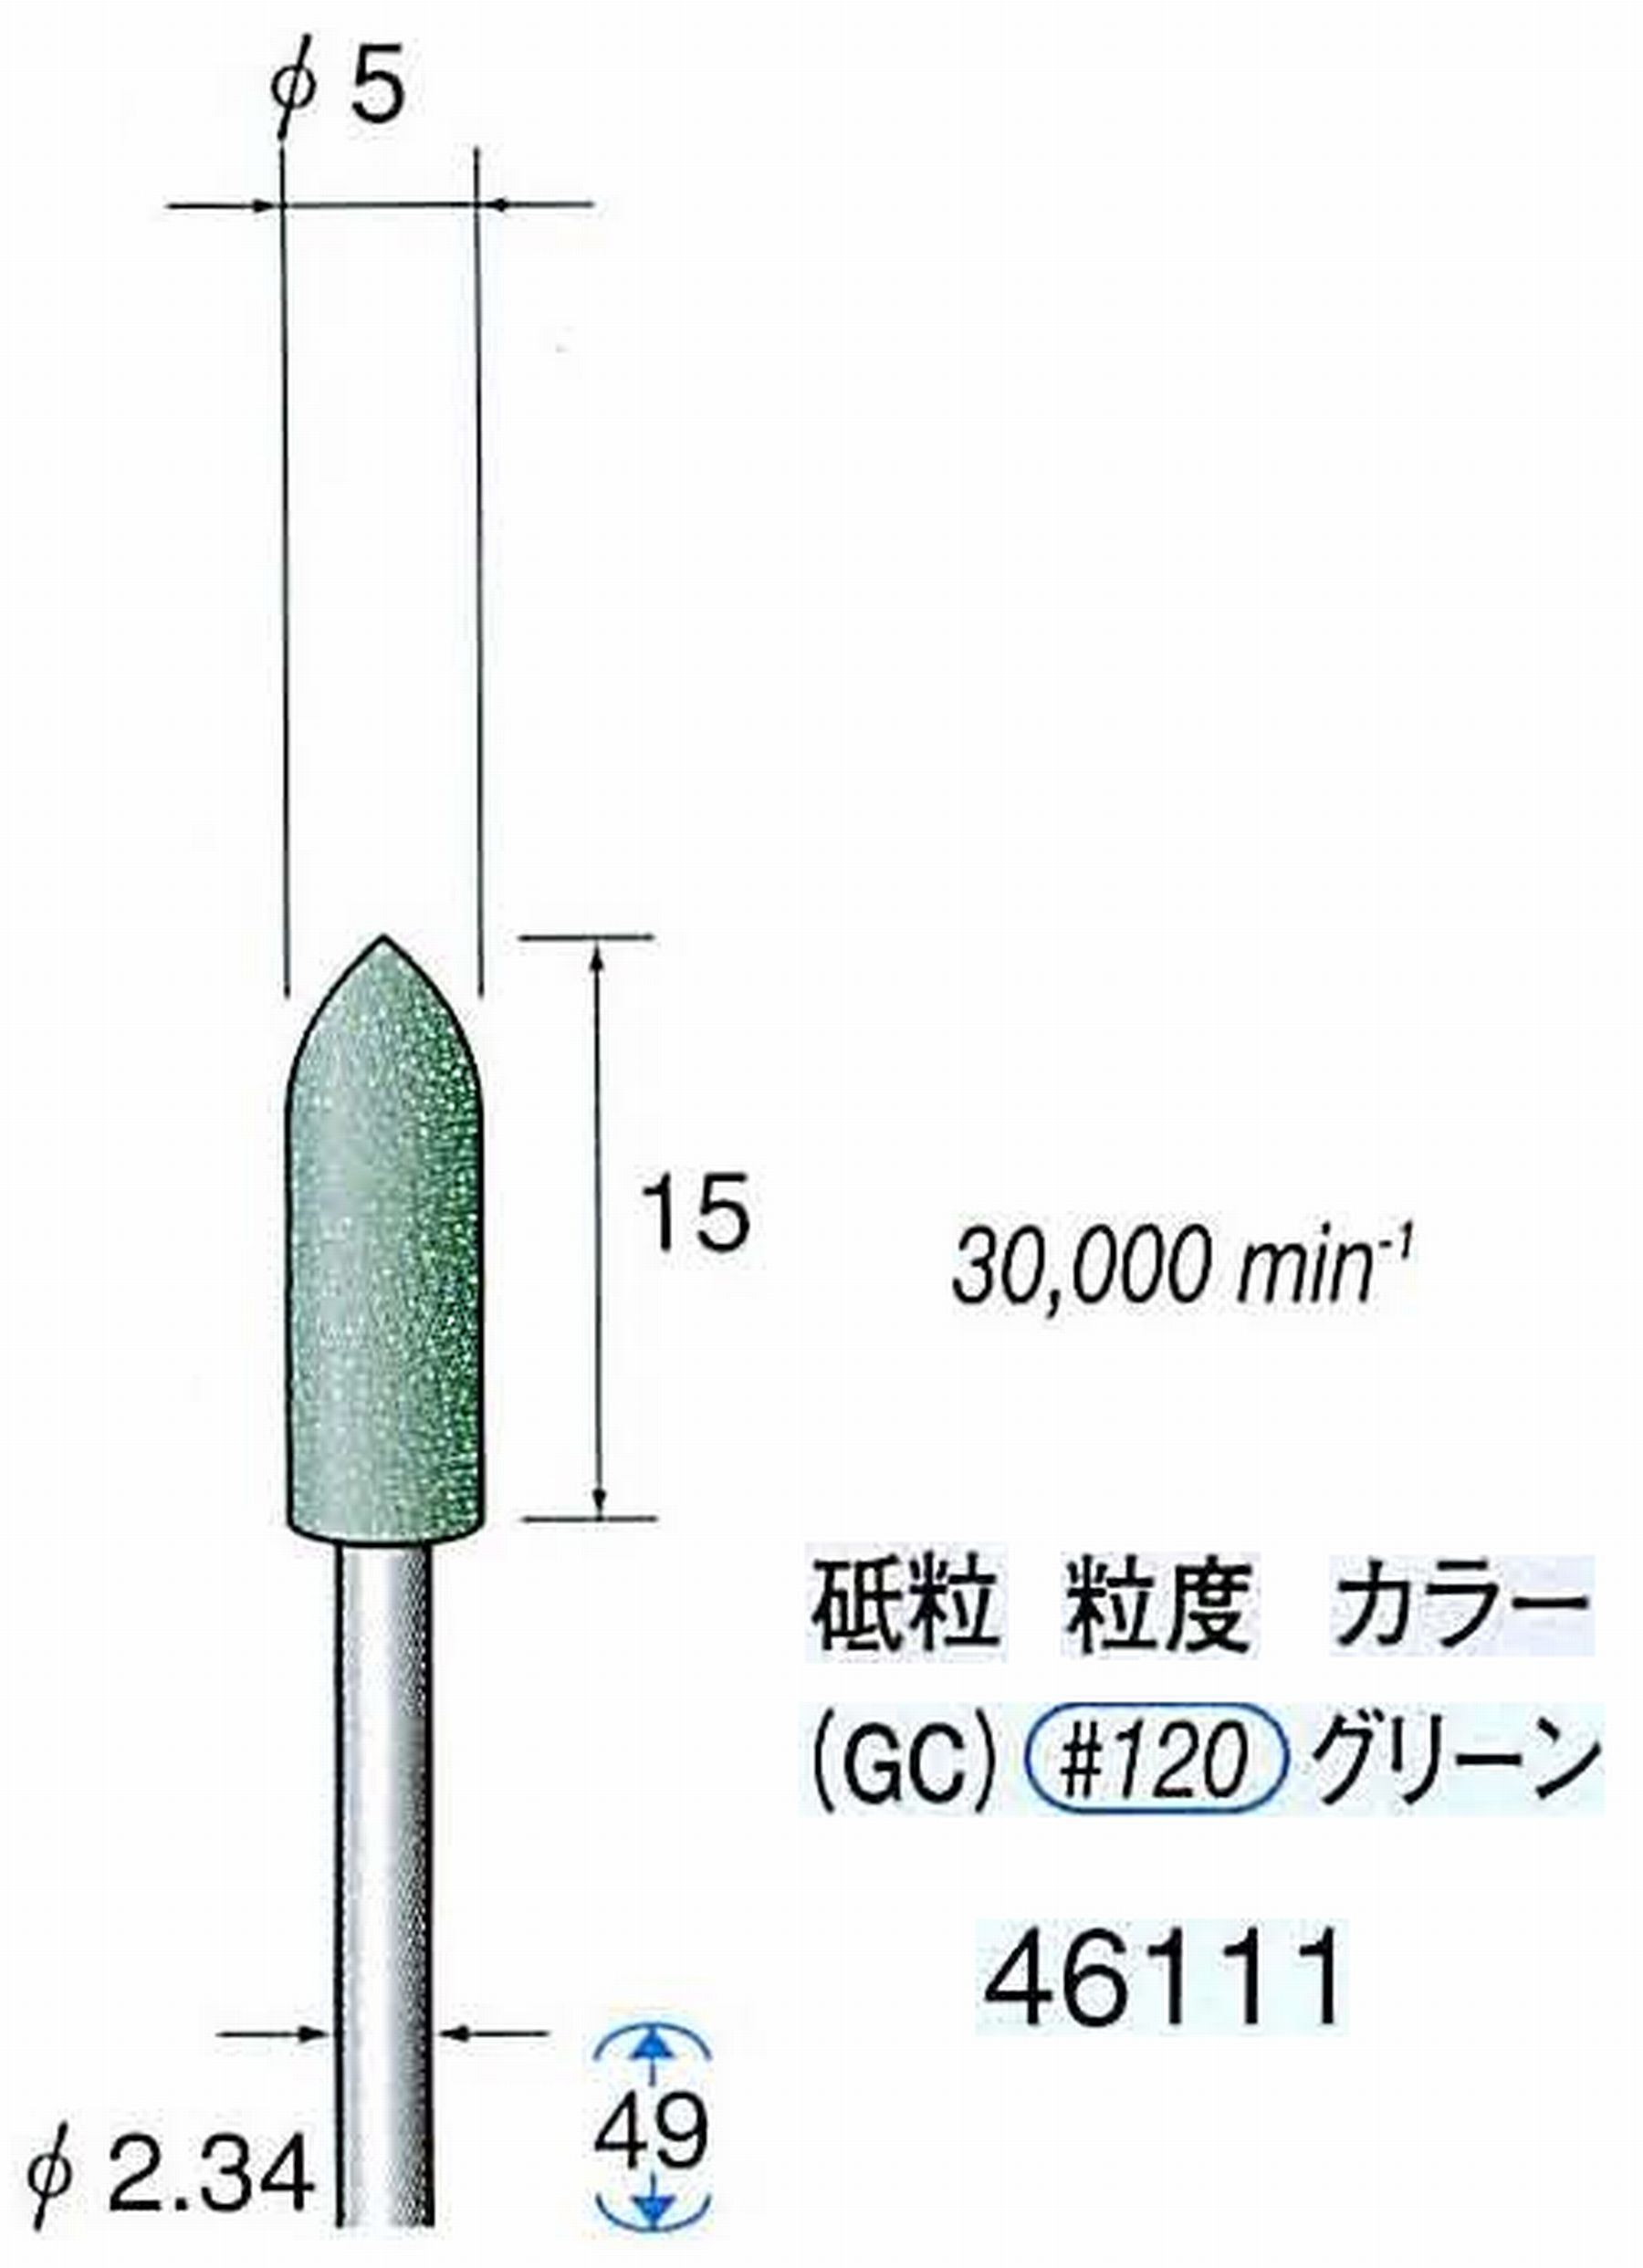 ナカニシ/NAKANISHI ゴム砥石 グリーンポリッシャー(GC砥粒)ゴム質の硬さ：ミディアム 軸径(シャンク) φ2.34mm 46111